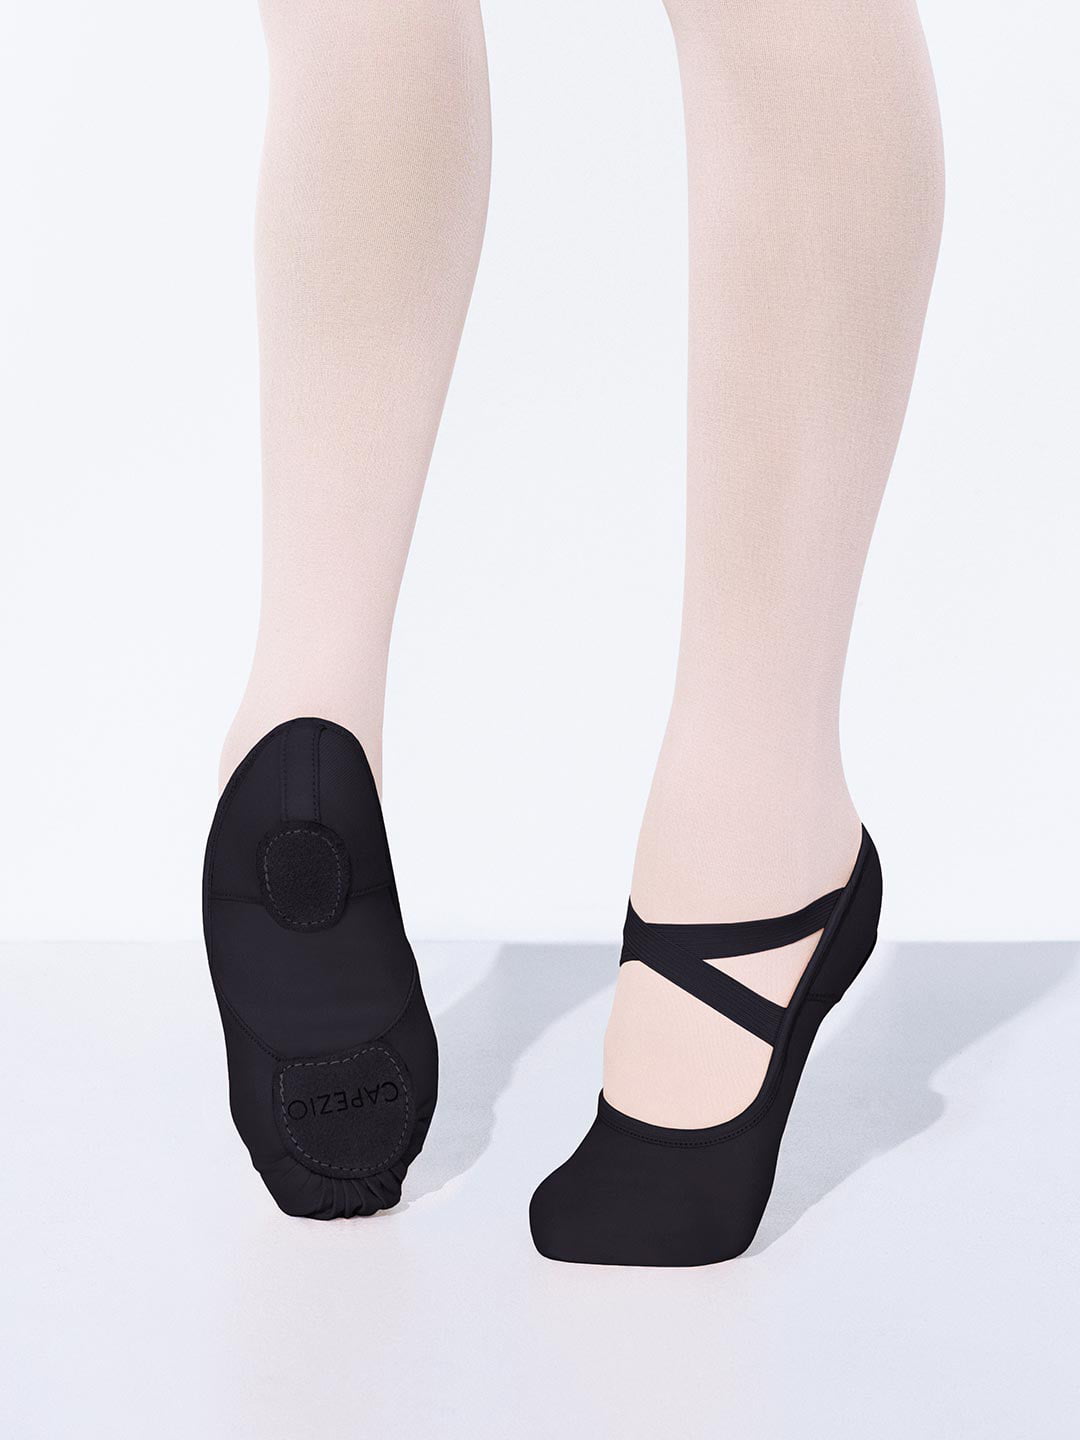 Capezio Hanami Leather Ballet Shoe